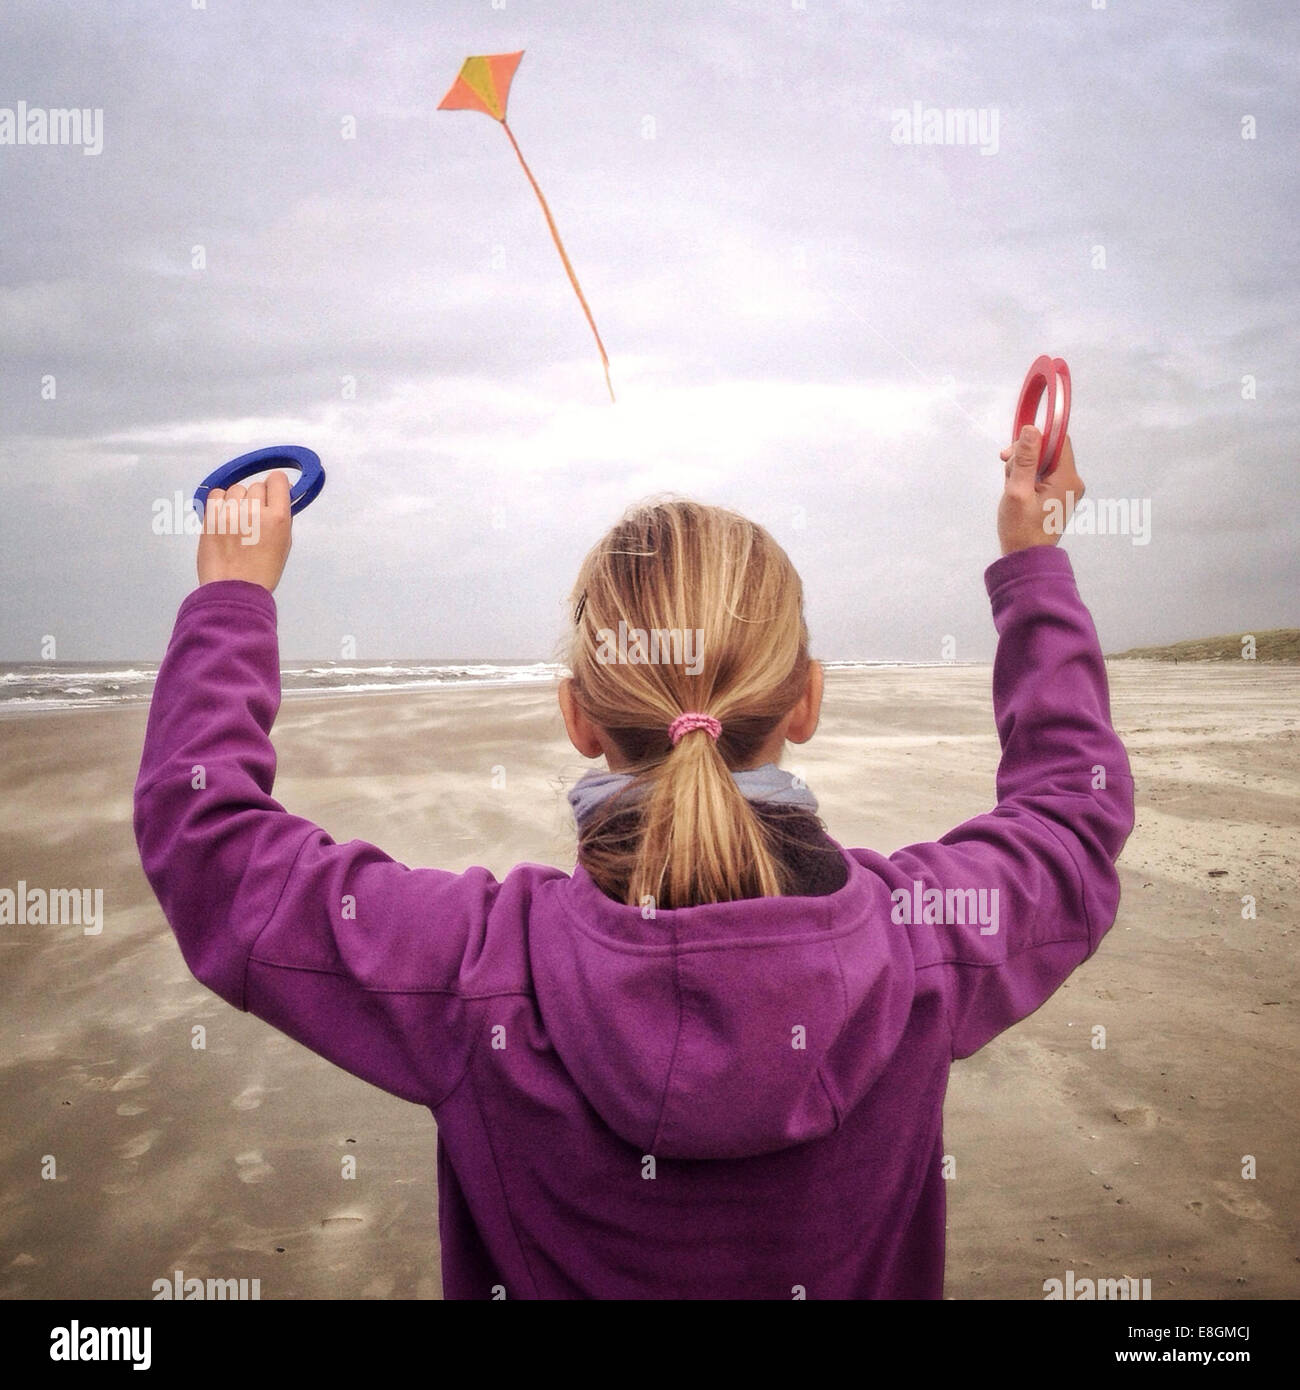 Vista trasera de la chica volando cometa en la playa Foto de stock